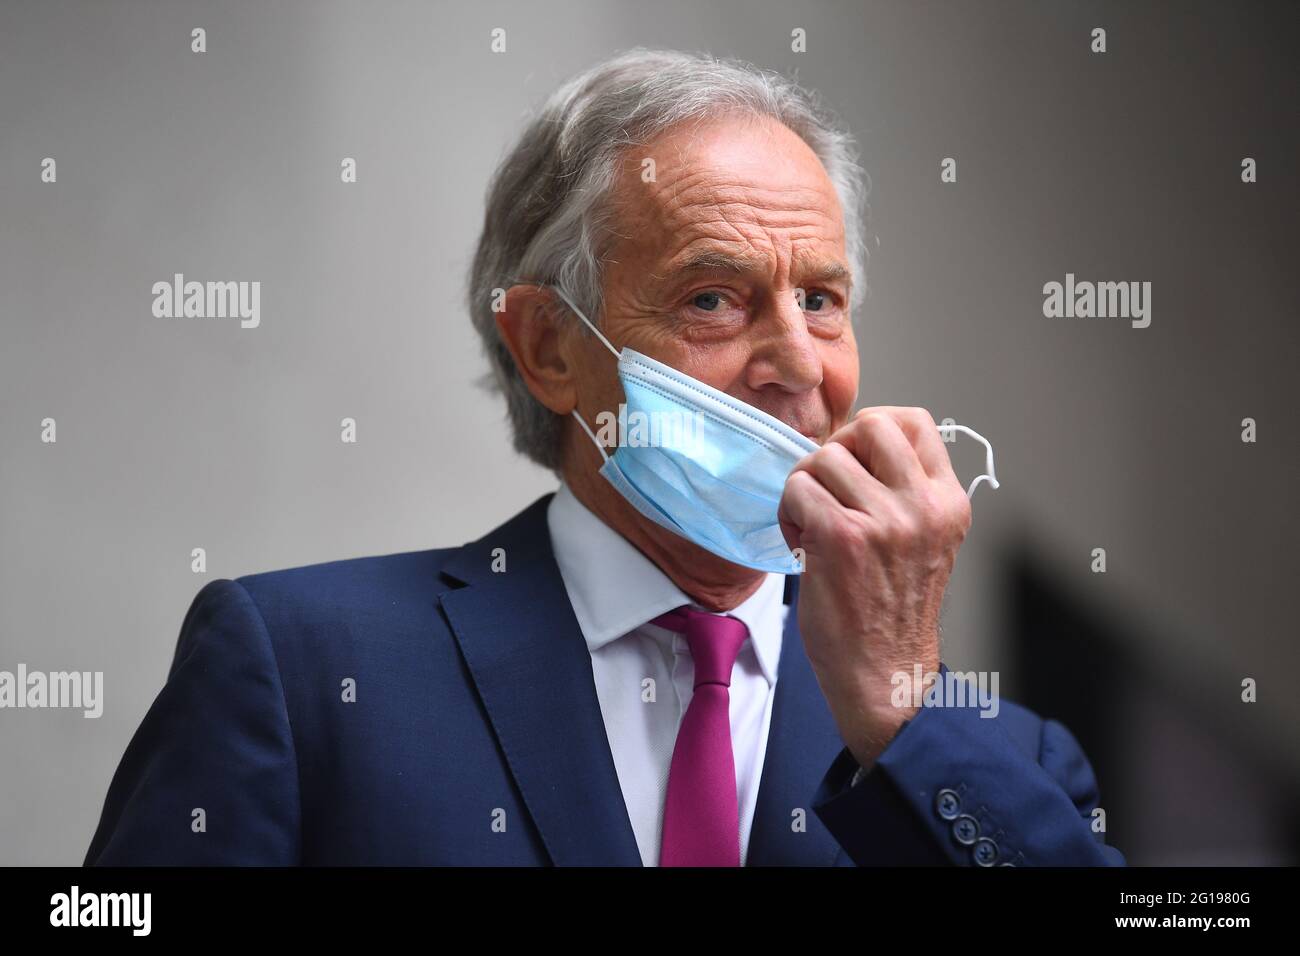 L'ex primo ministro Tony Blair arriva alla BBC Broadcasting House nel centro di Londra per la sua apparizione sul programma BBC1 Current Affairs, l'Andrew Marr Show. Data immagine: Domenica 6 giugno 2021. Foto Stock